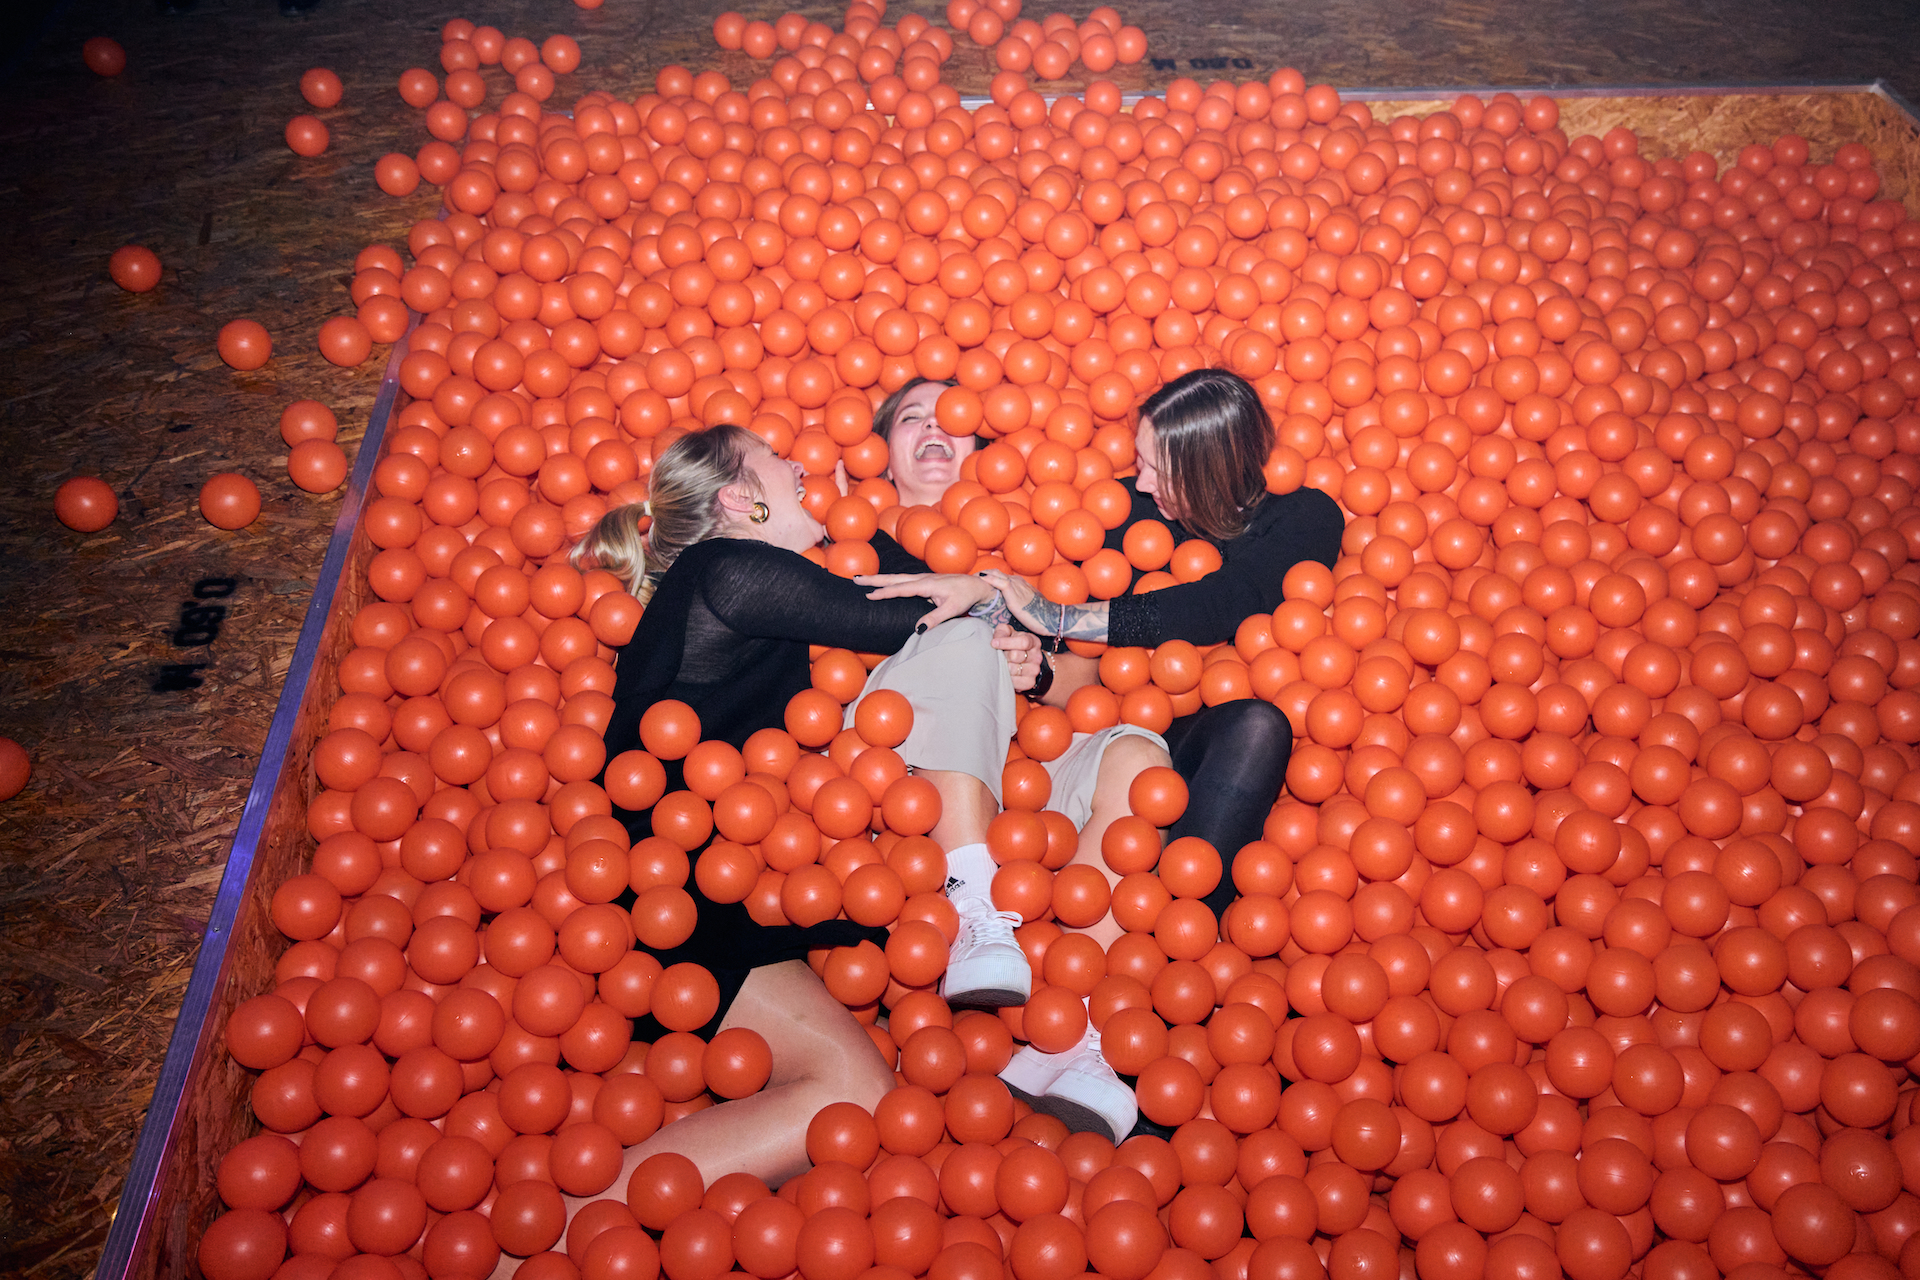 Drei Personen liegen lachend in einem Bällebad aus orangenen Bällen